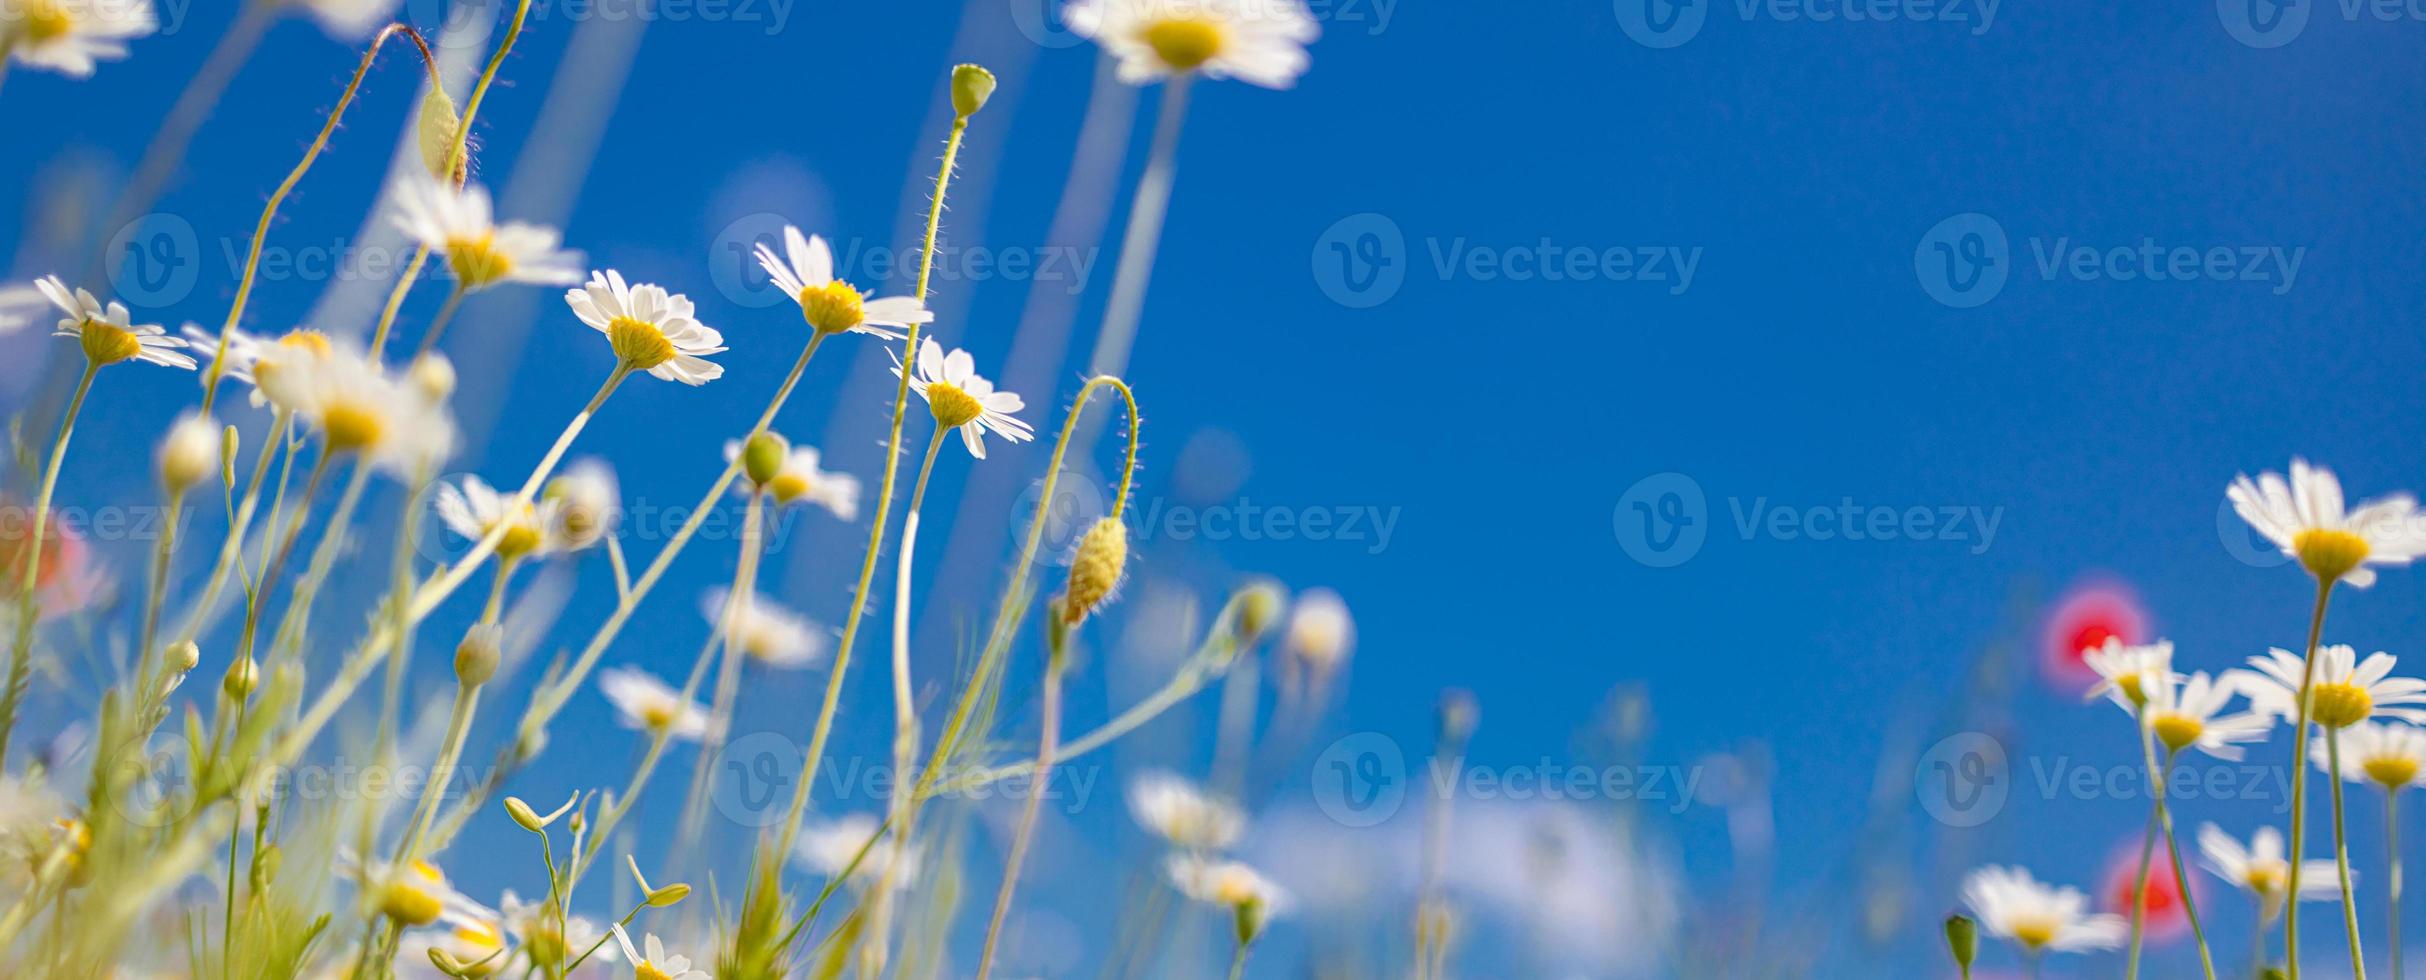 printemps été closeup marguerites blanches sur fond de ciel bleu. couleurs douces idylliques, paysage de champ de fleurs de prairie photo